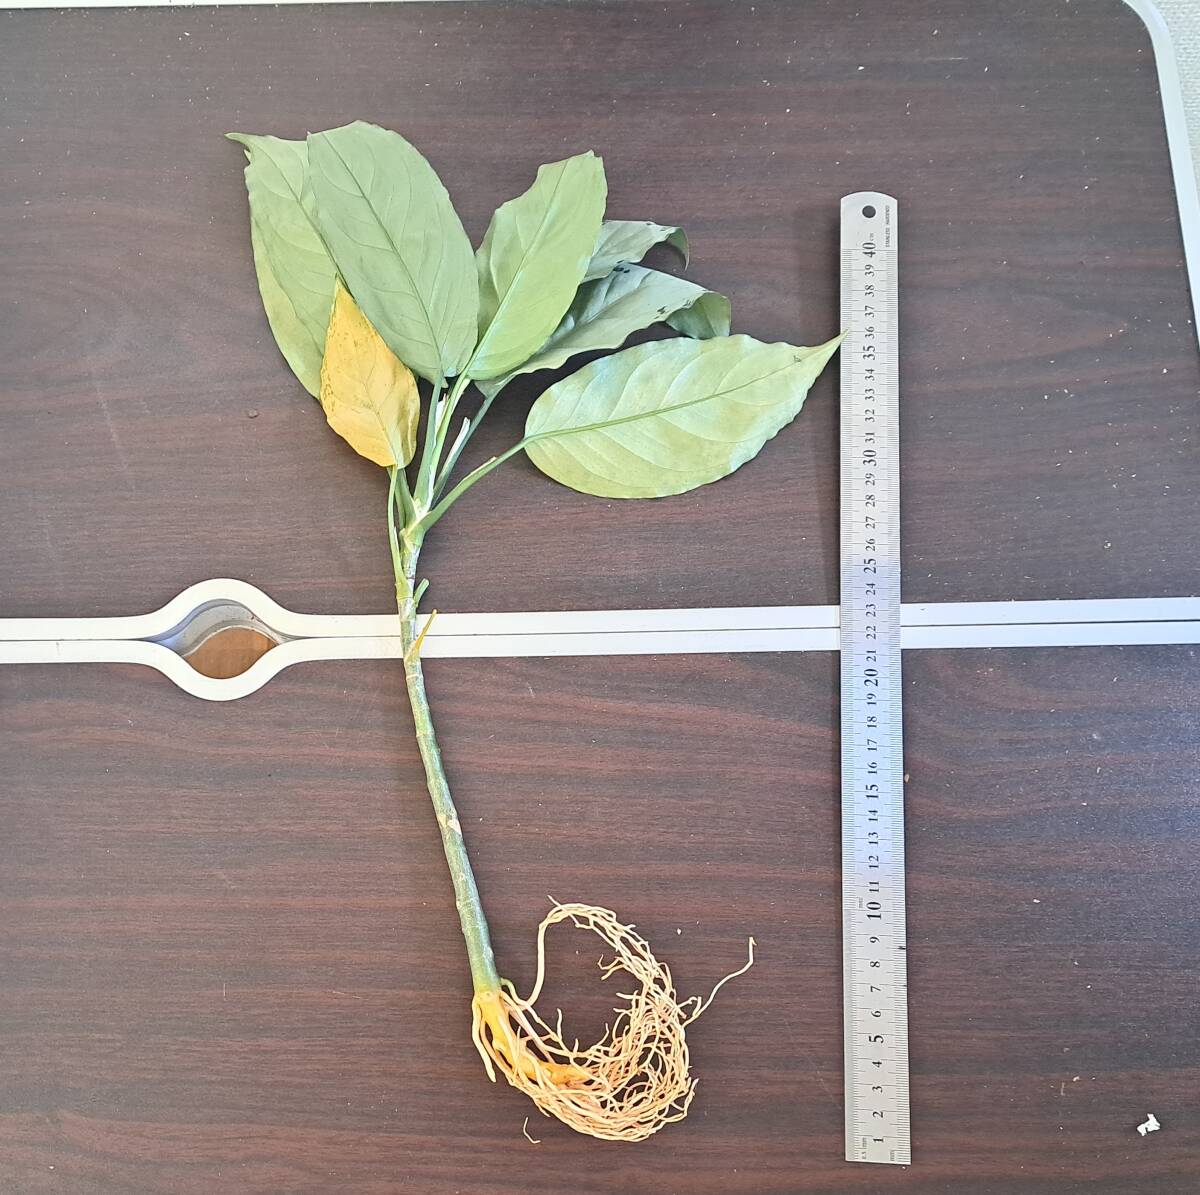 ☆輸入直後☆144 アグラオネマ 植物☆Aglaonema pictum Aceh (アグラオネマ ピクタム)Melda 熱帯植物/の画像3